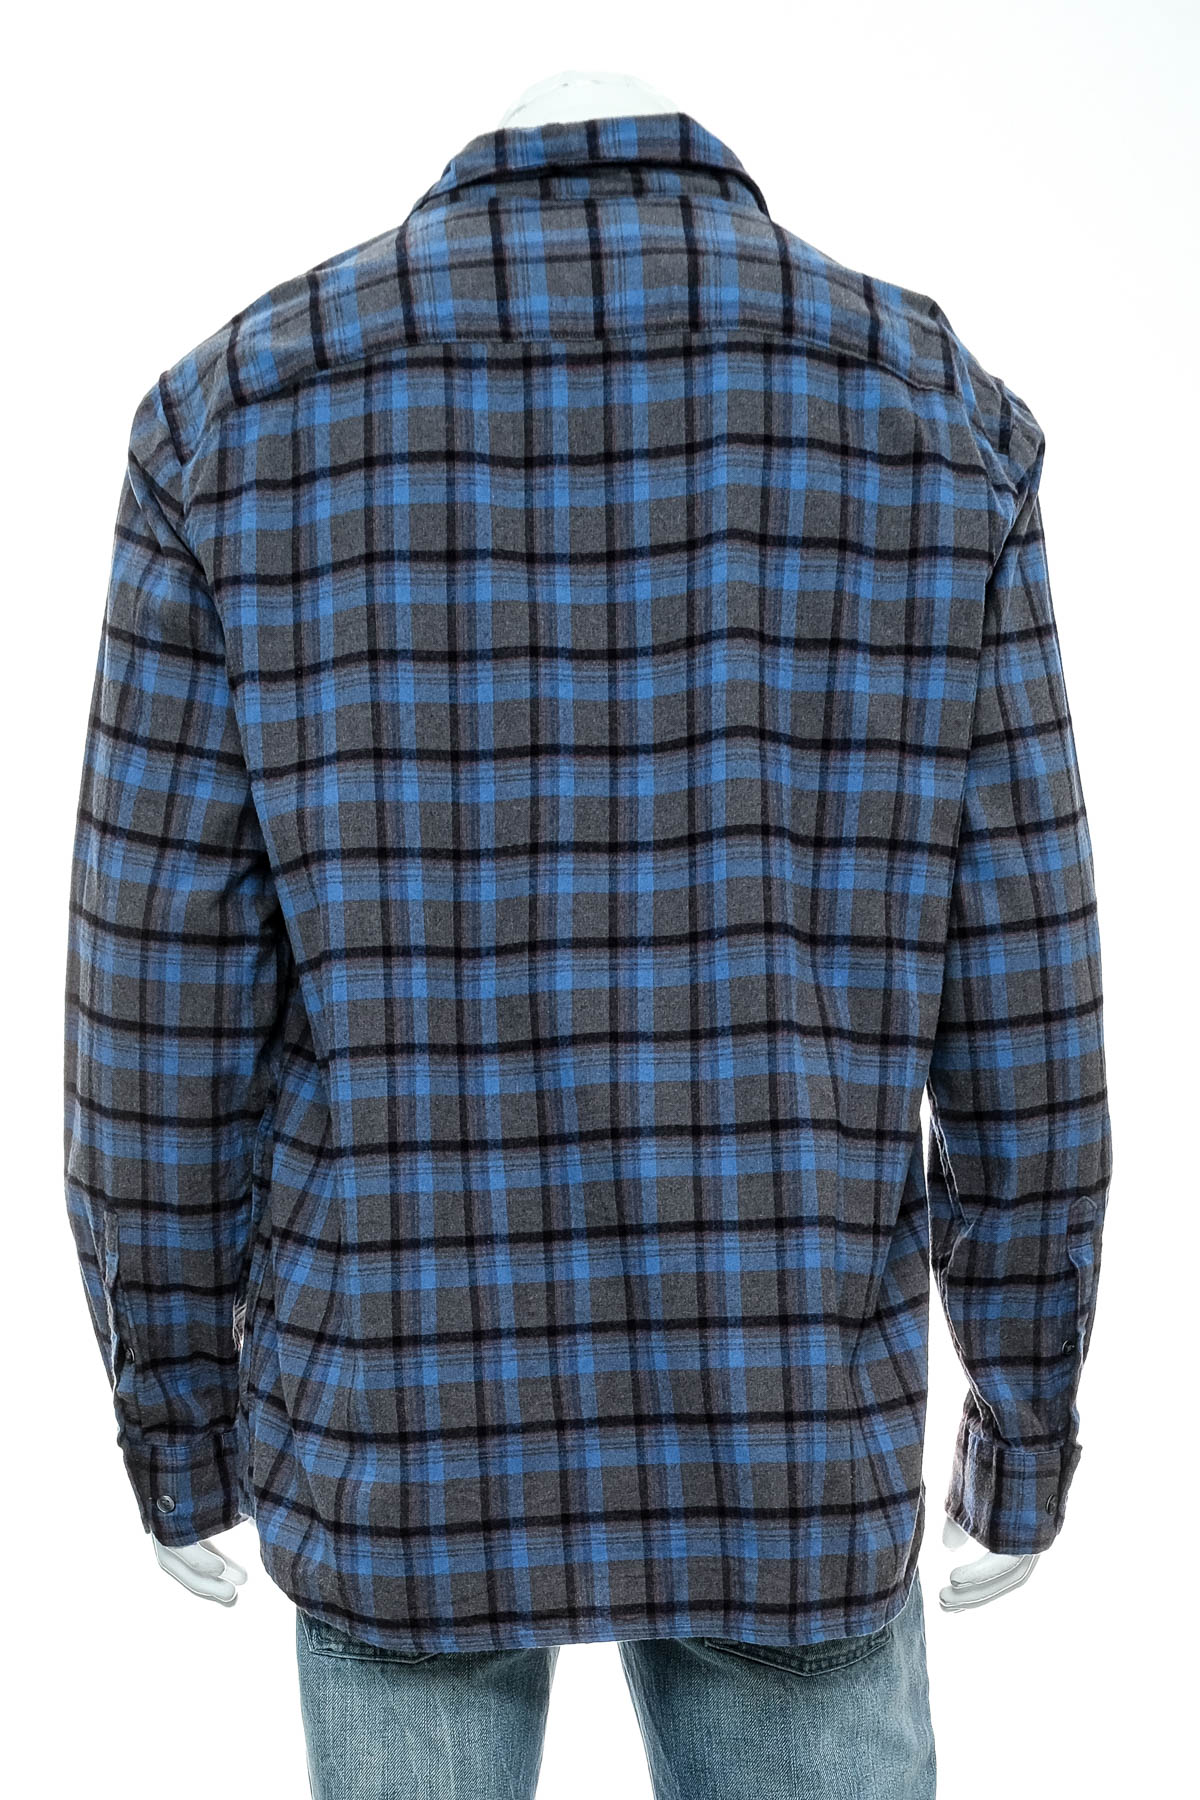 Ανδρικό πουκάμισο - APT. 9 - 1